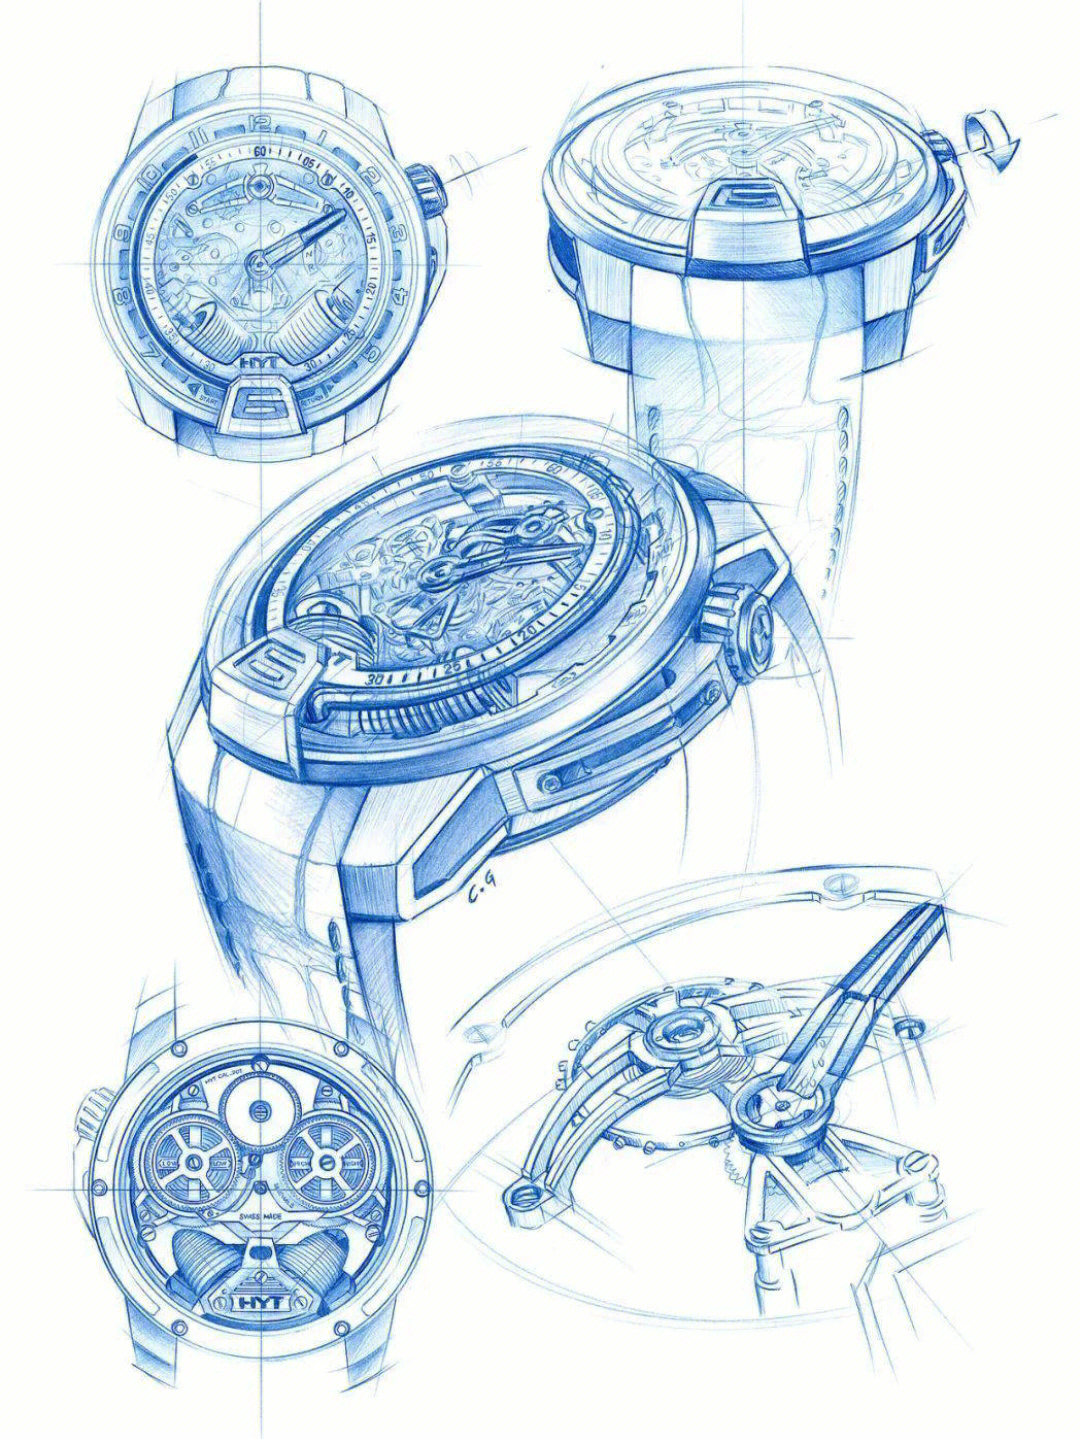 精致的手表手绘图产品设计手绘素材